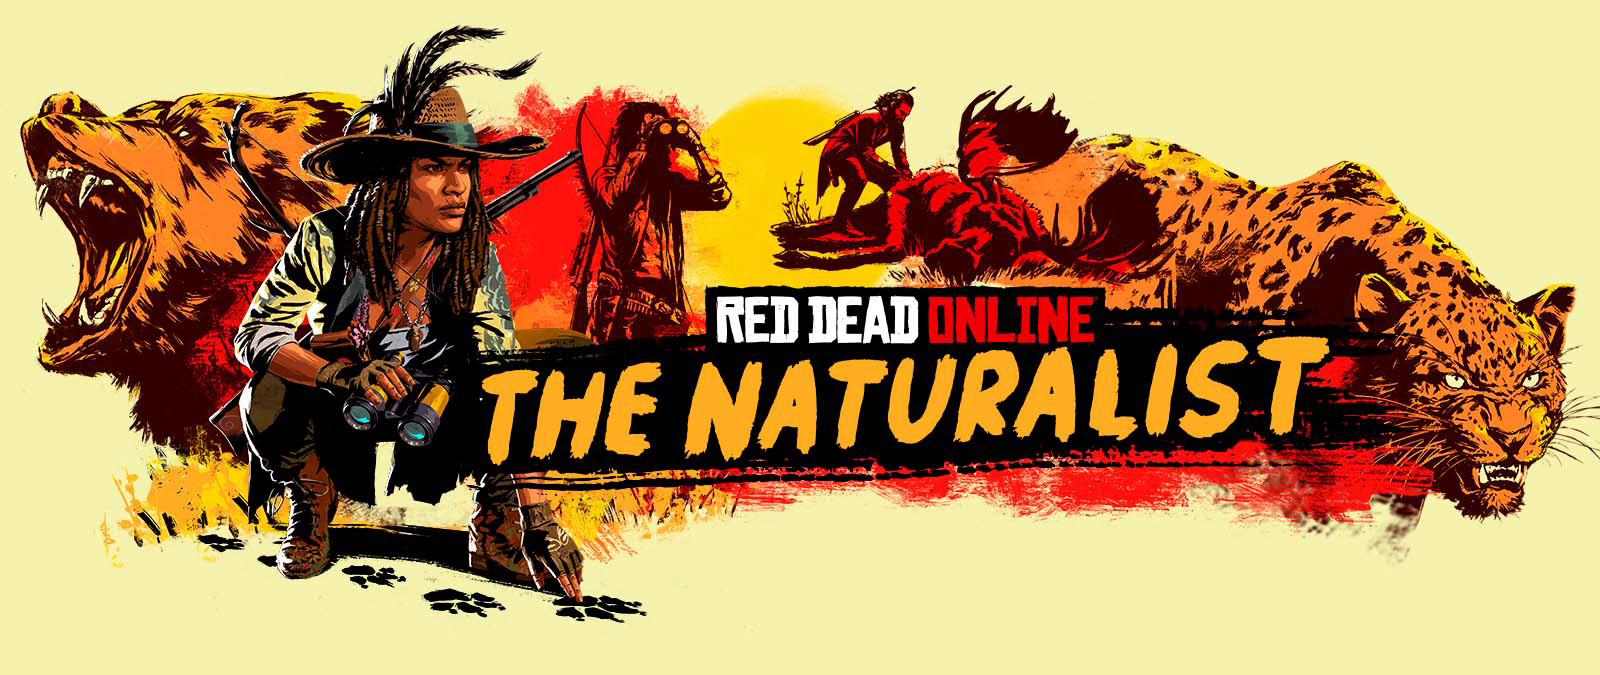 Red Dead Online. The Naturalist. Personages die grote dieren volgen en jagen.